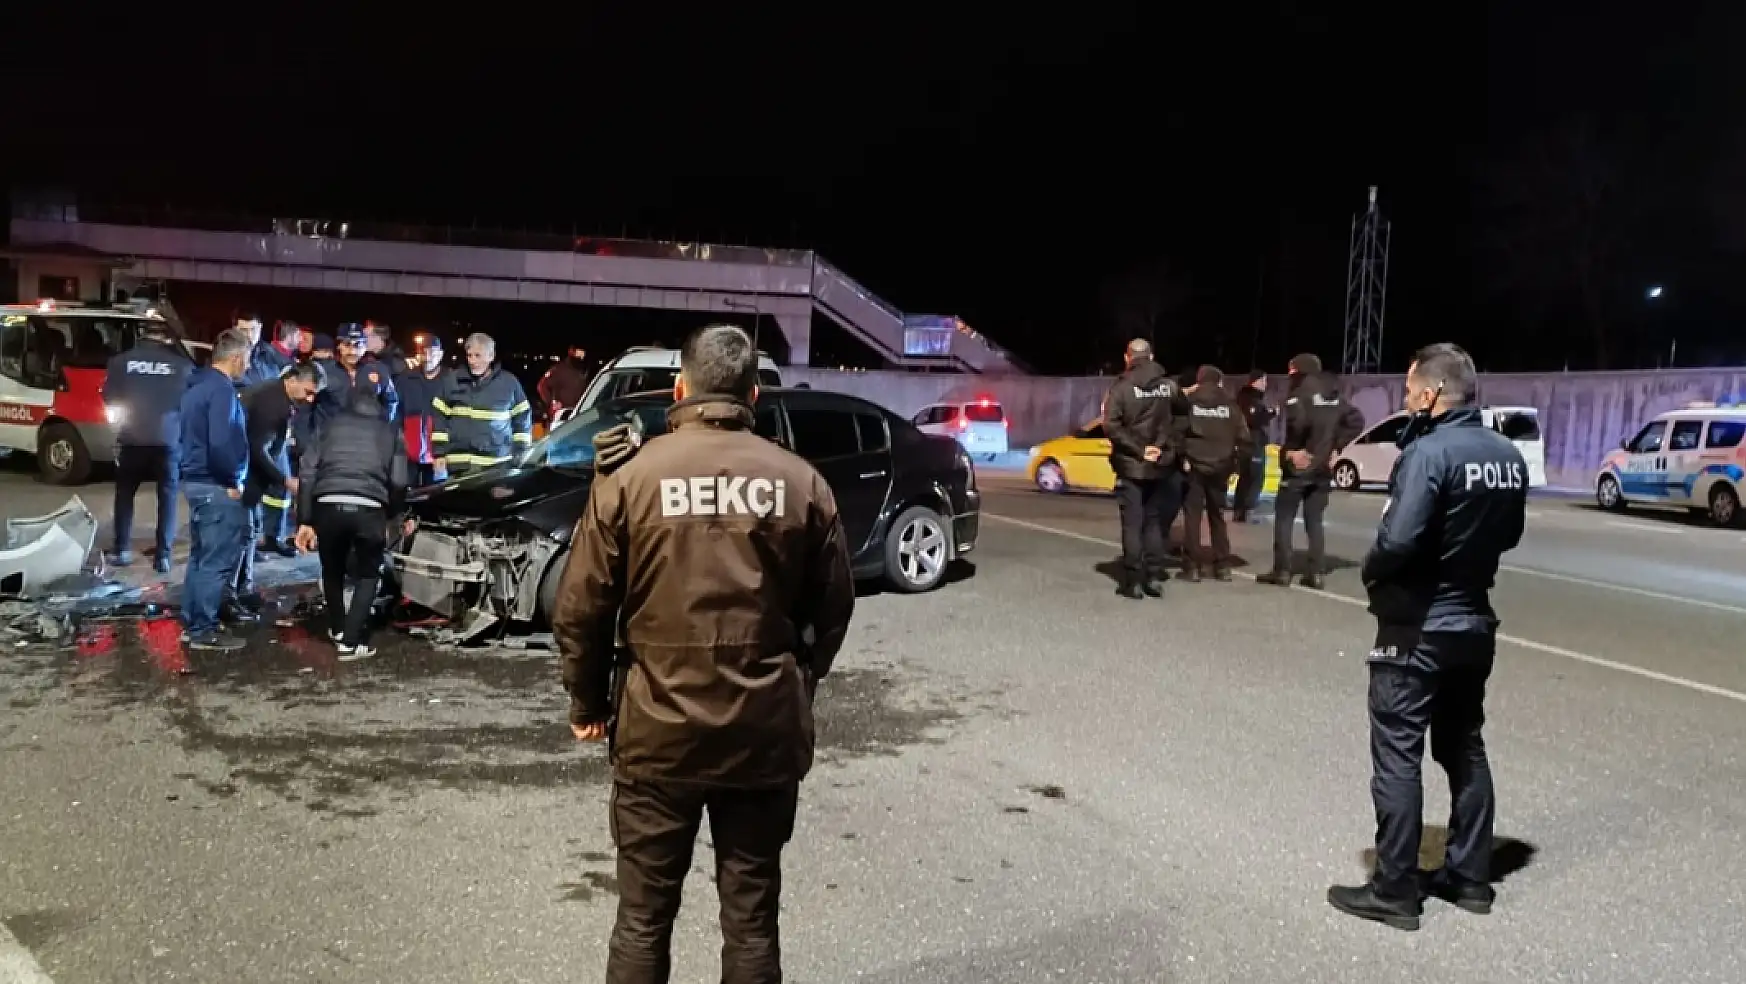 Bingöl'de gece saatlerinde 2 ayrı kaza 2 ölü, 4 yaralı